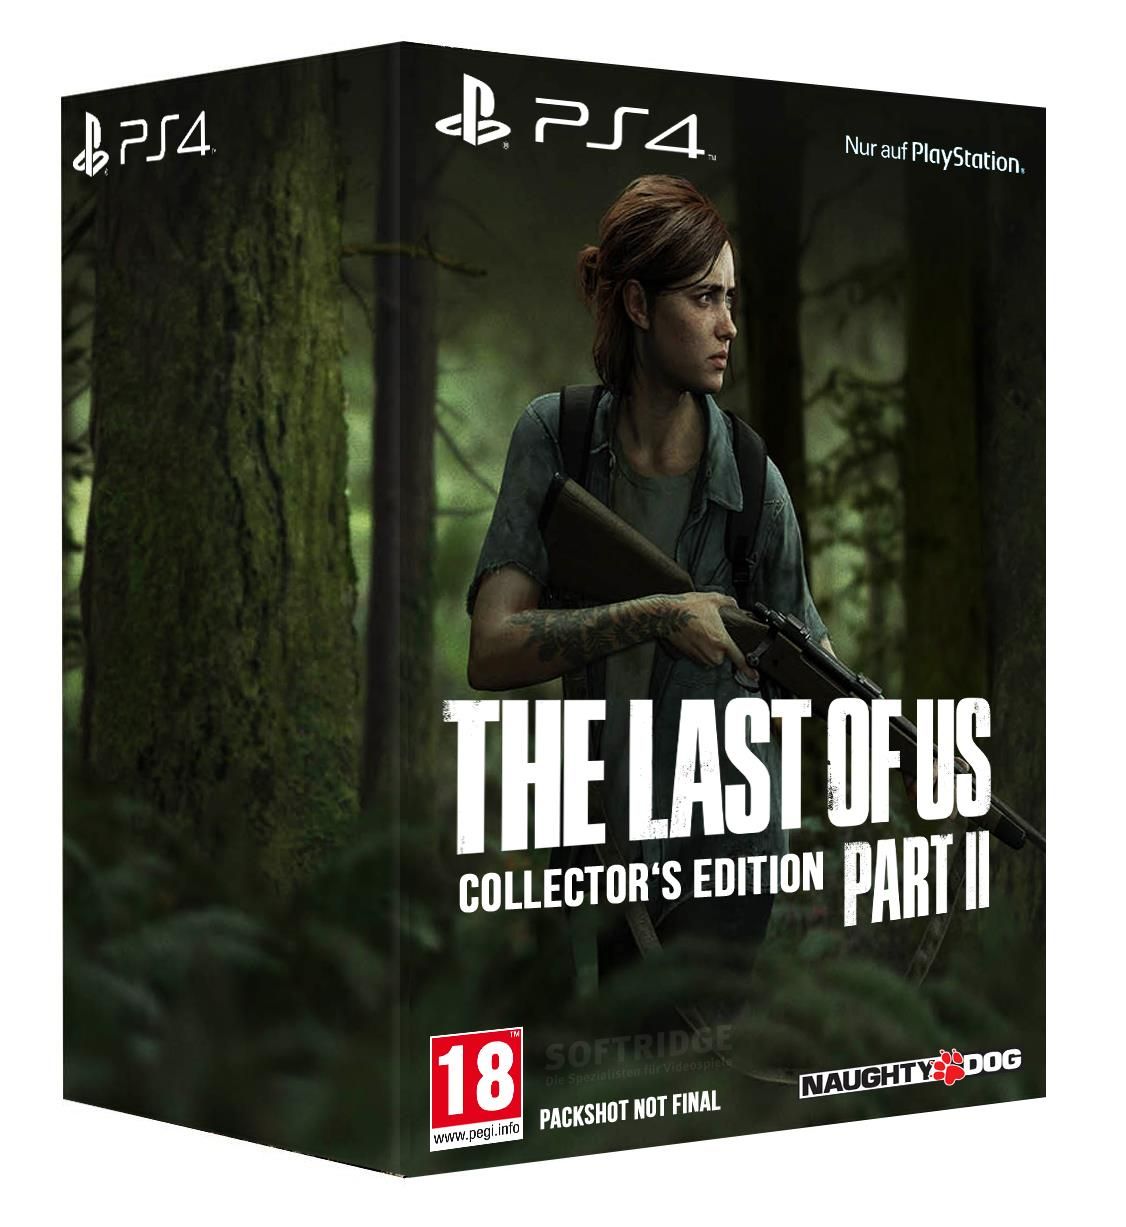 Обложка коллекционного издания The Last of Us Part II
Источник: Softridge